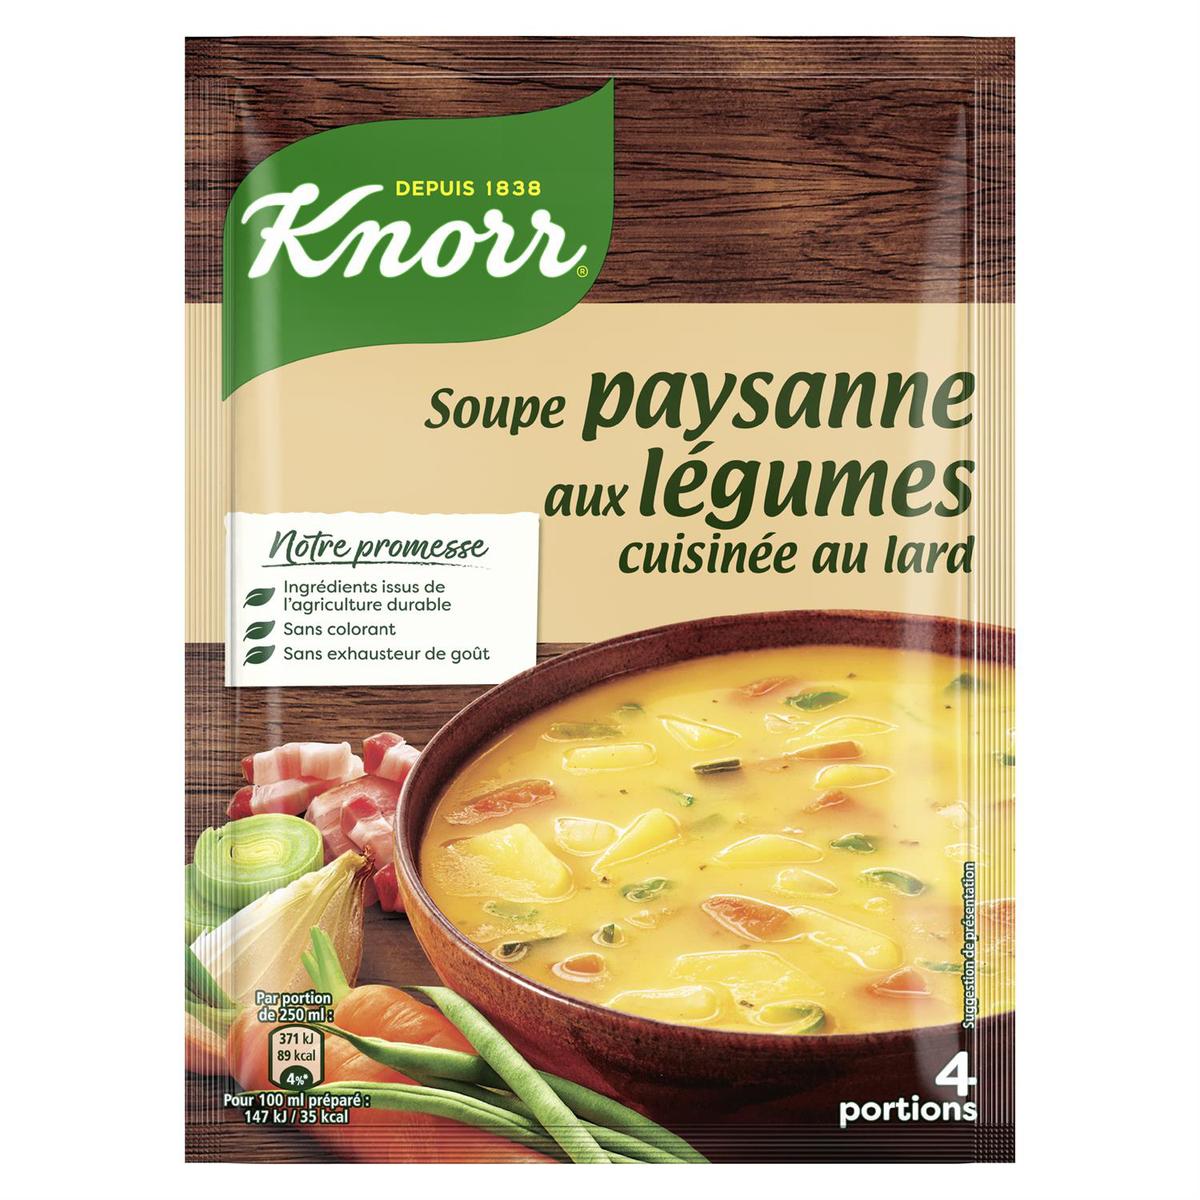 Soupe passée 9 légumes déshydratée, Knorr (4 portions)